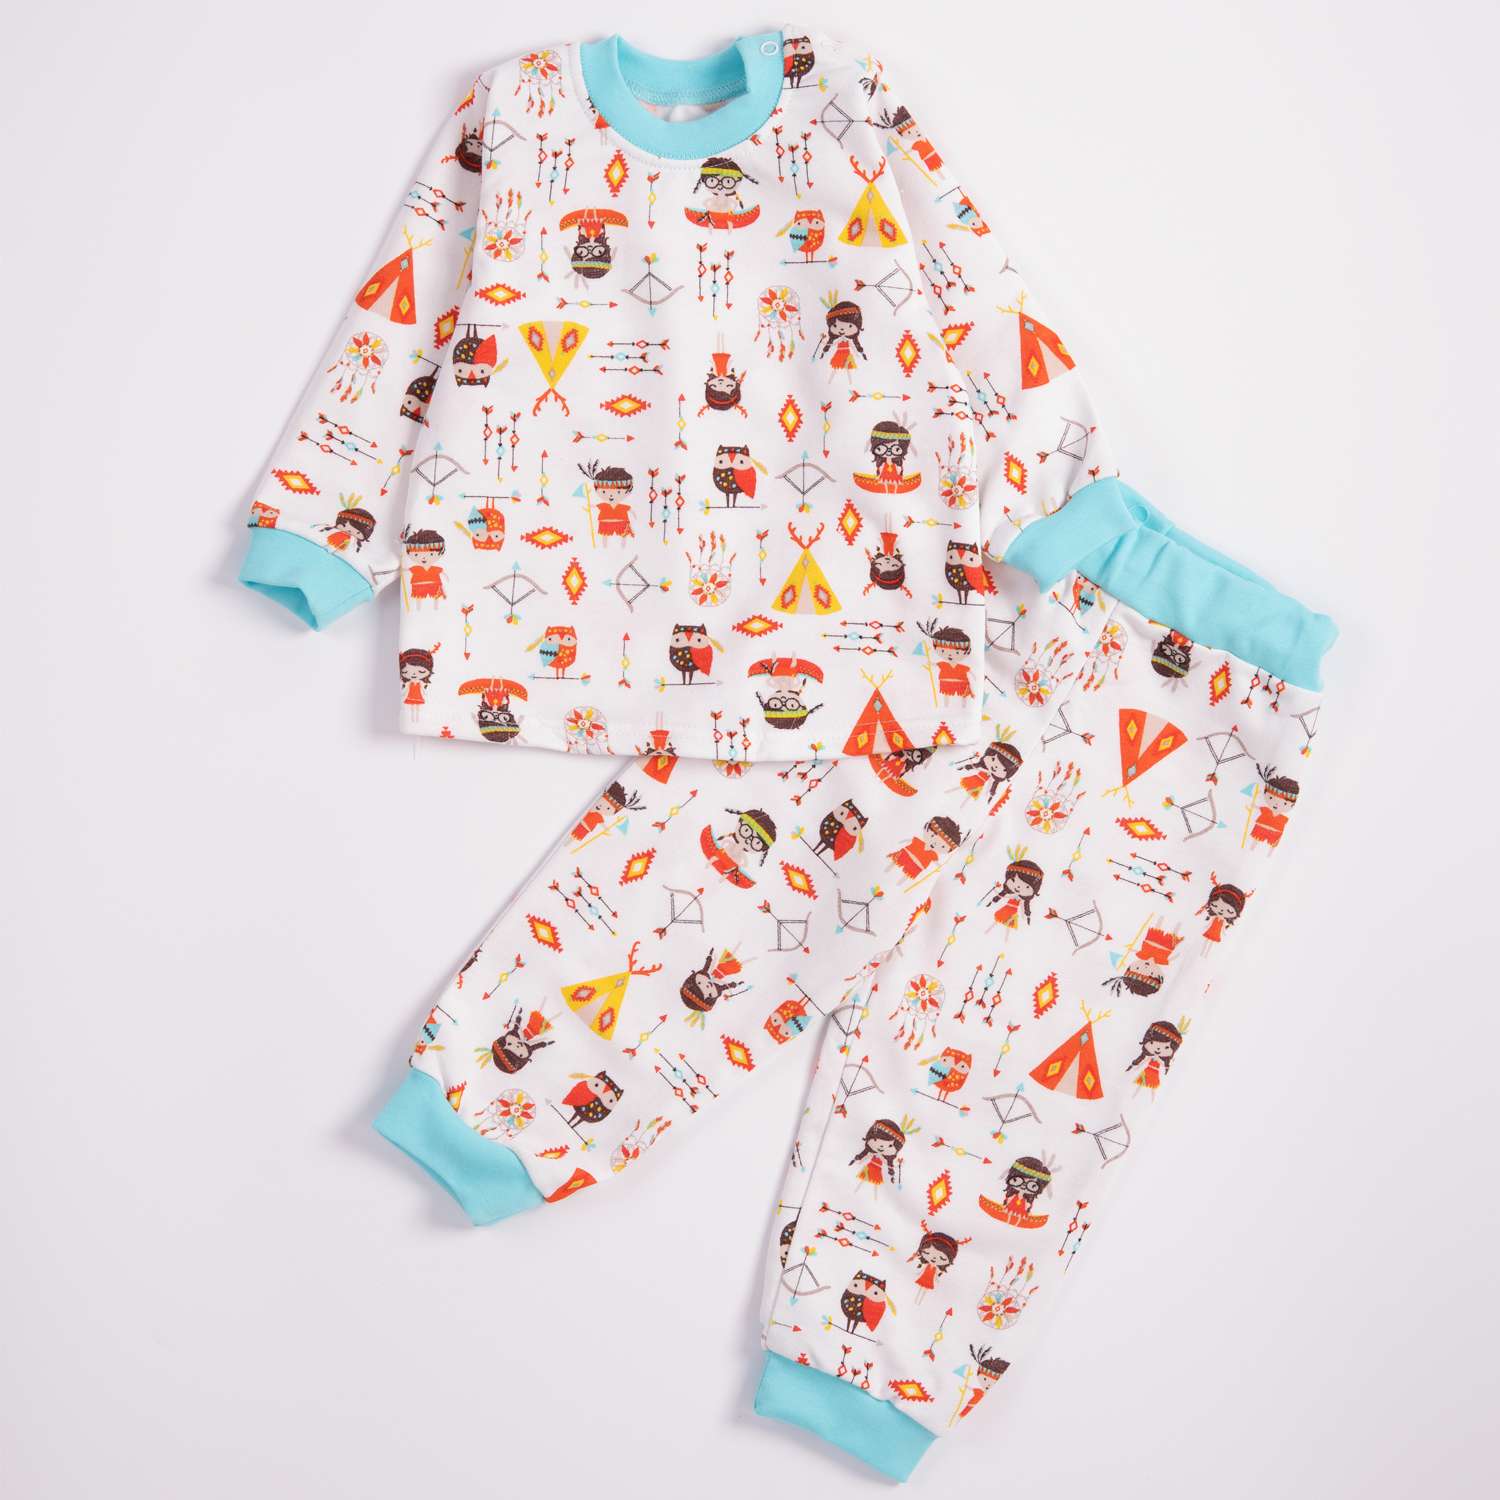 Название пижам. Пижама с совенком. Пижама с совятами детская. Детские пижамы Совенок УФ УФ. Пижама Совенок фото.